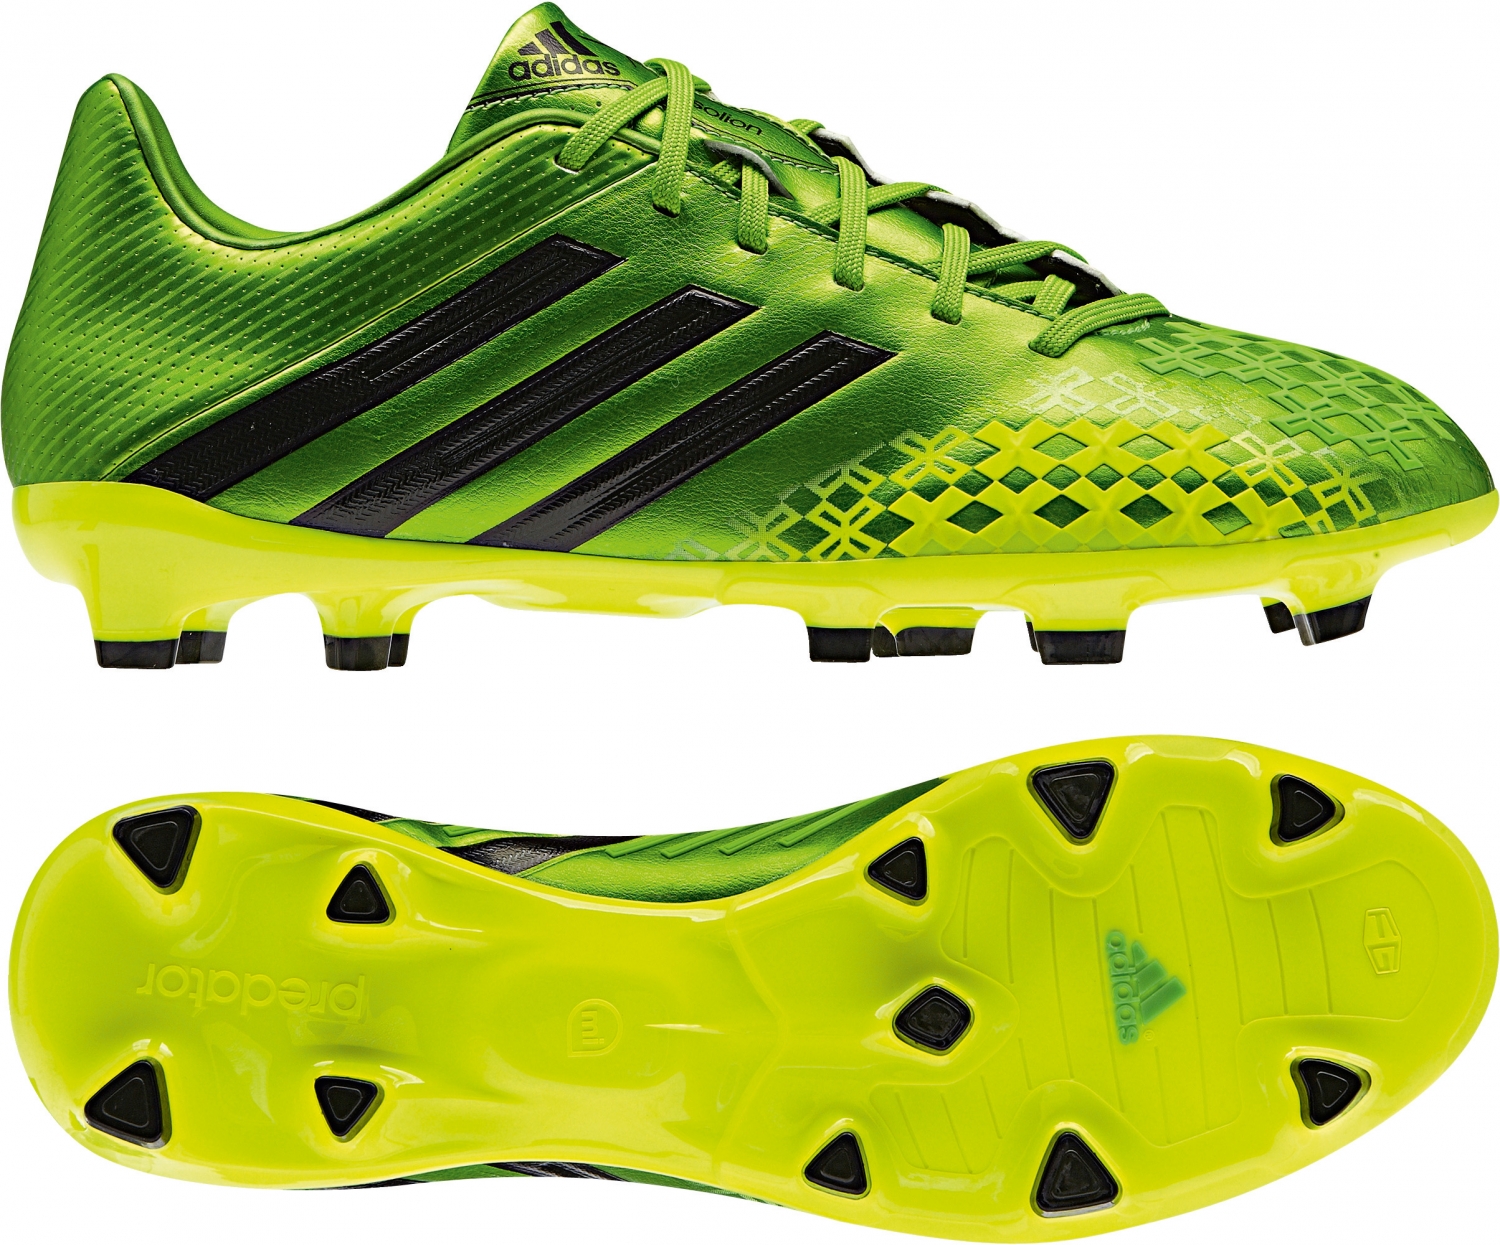 http://ebay.trends-sport.de/Fussballschuhe/adidas2014/Predator_absolion_gruen_Q21658.jpg